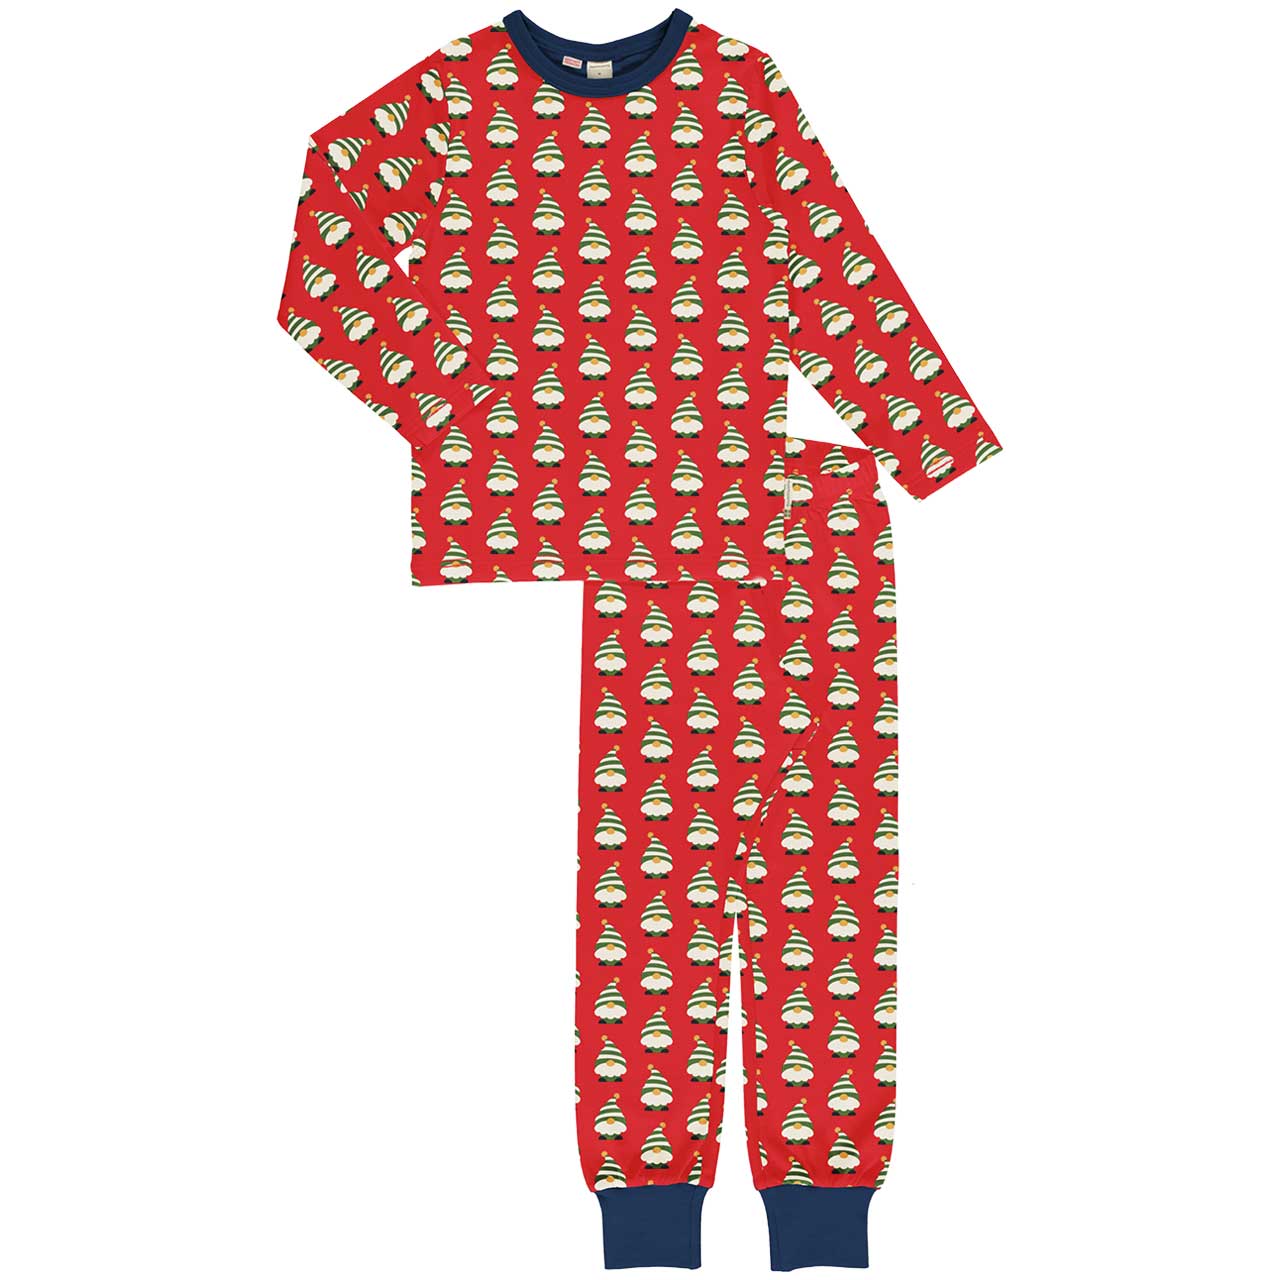 Erwachsenen Schlafanzug langarm Weihnachtself rot